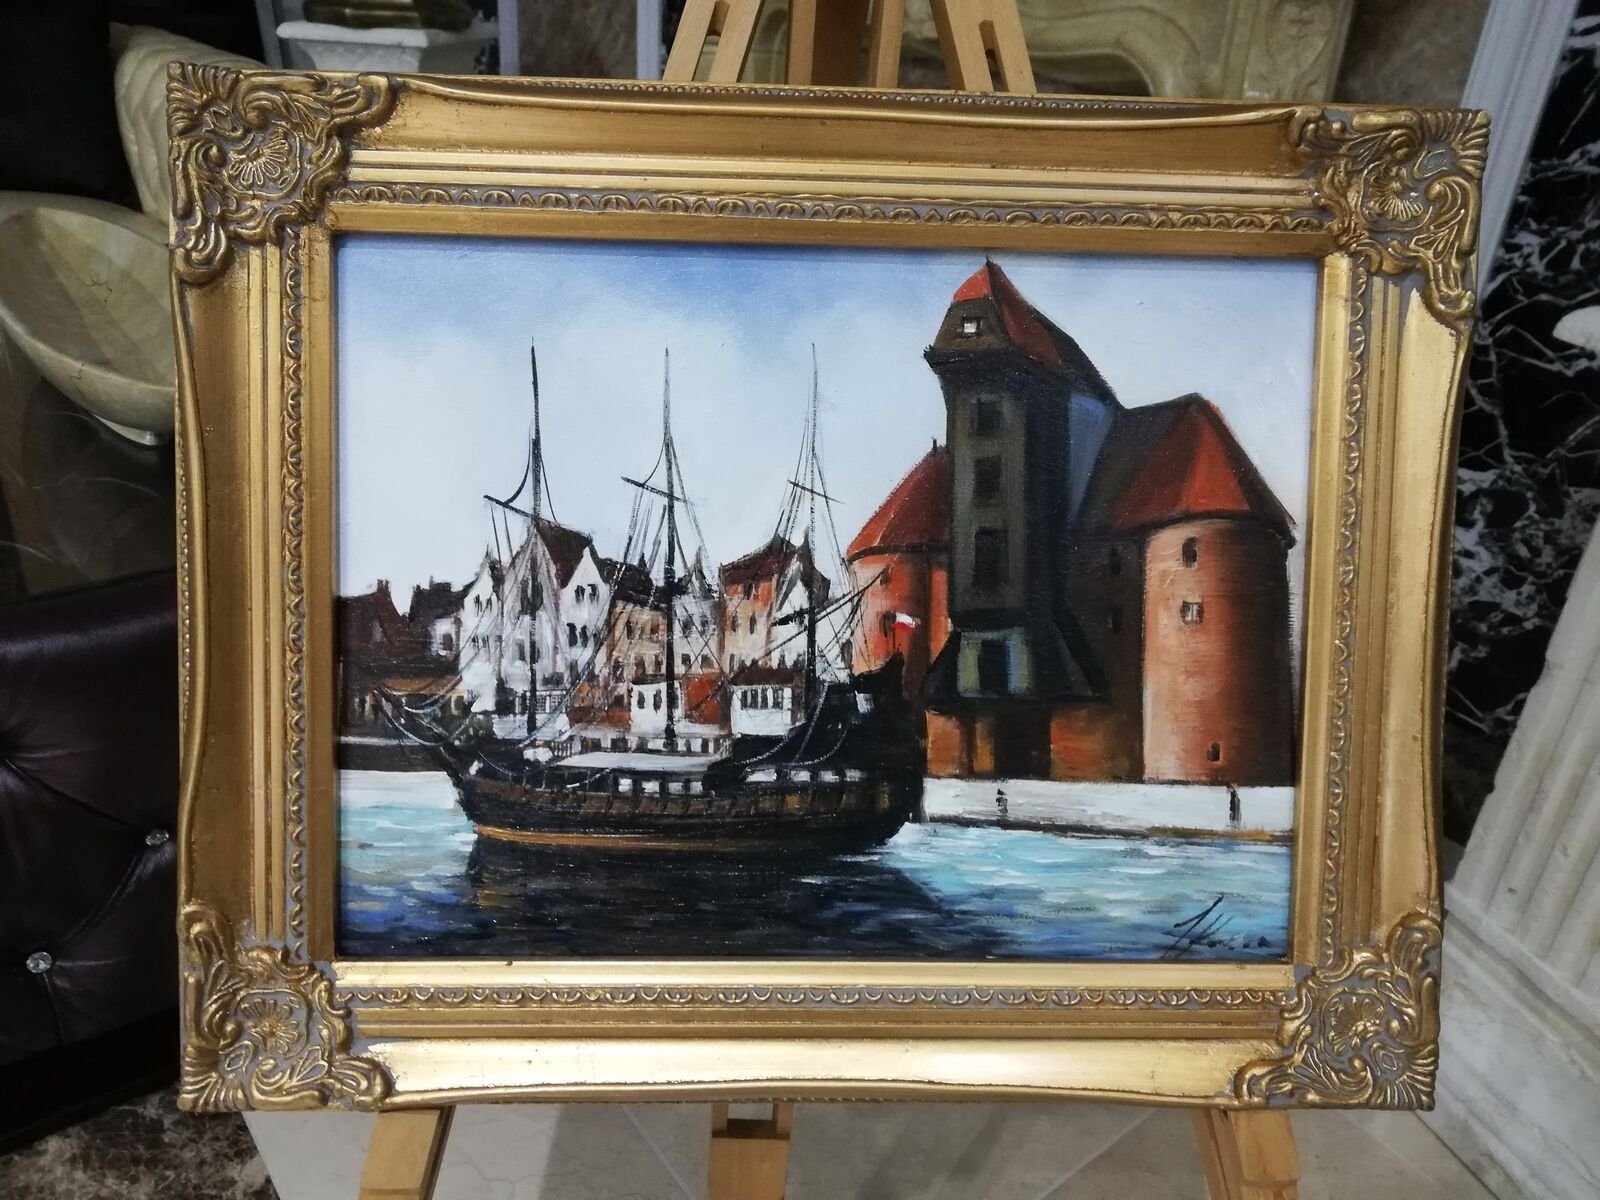 JVmoebel Ölbild Ölbild Bilder Gemälde Ölgemälde Bild 40 * 50 cm Sofort lieferbar neu, (1 St)